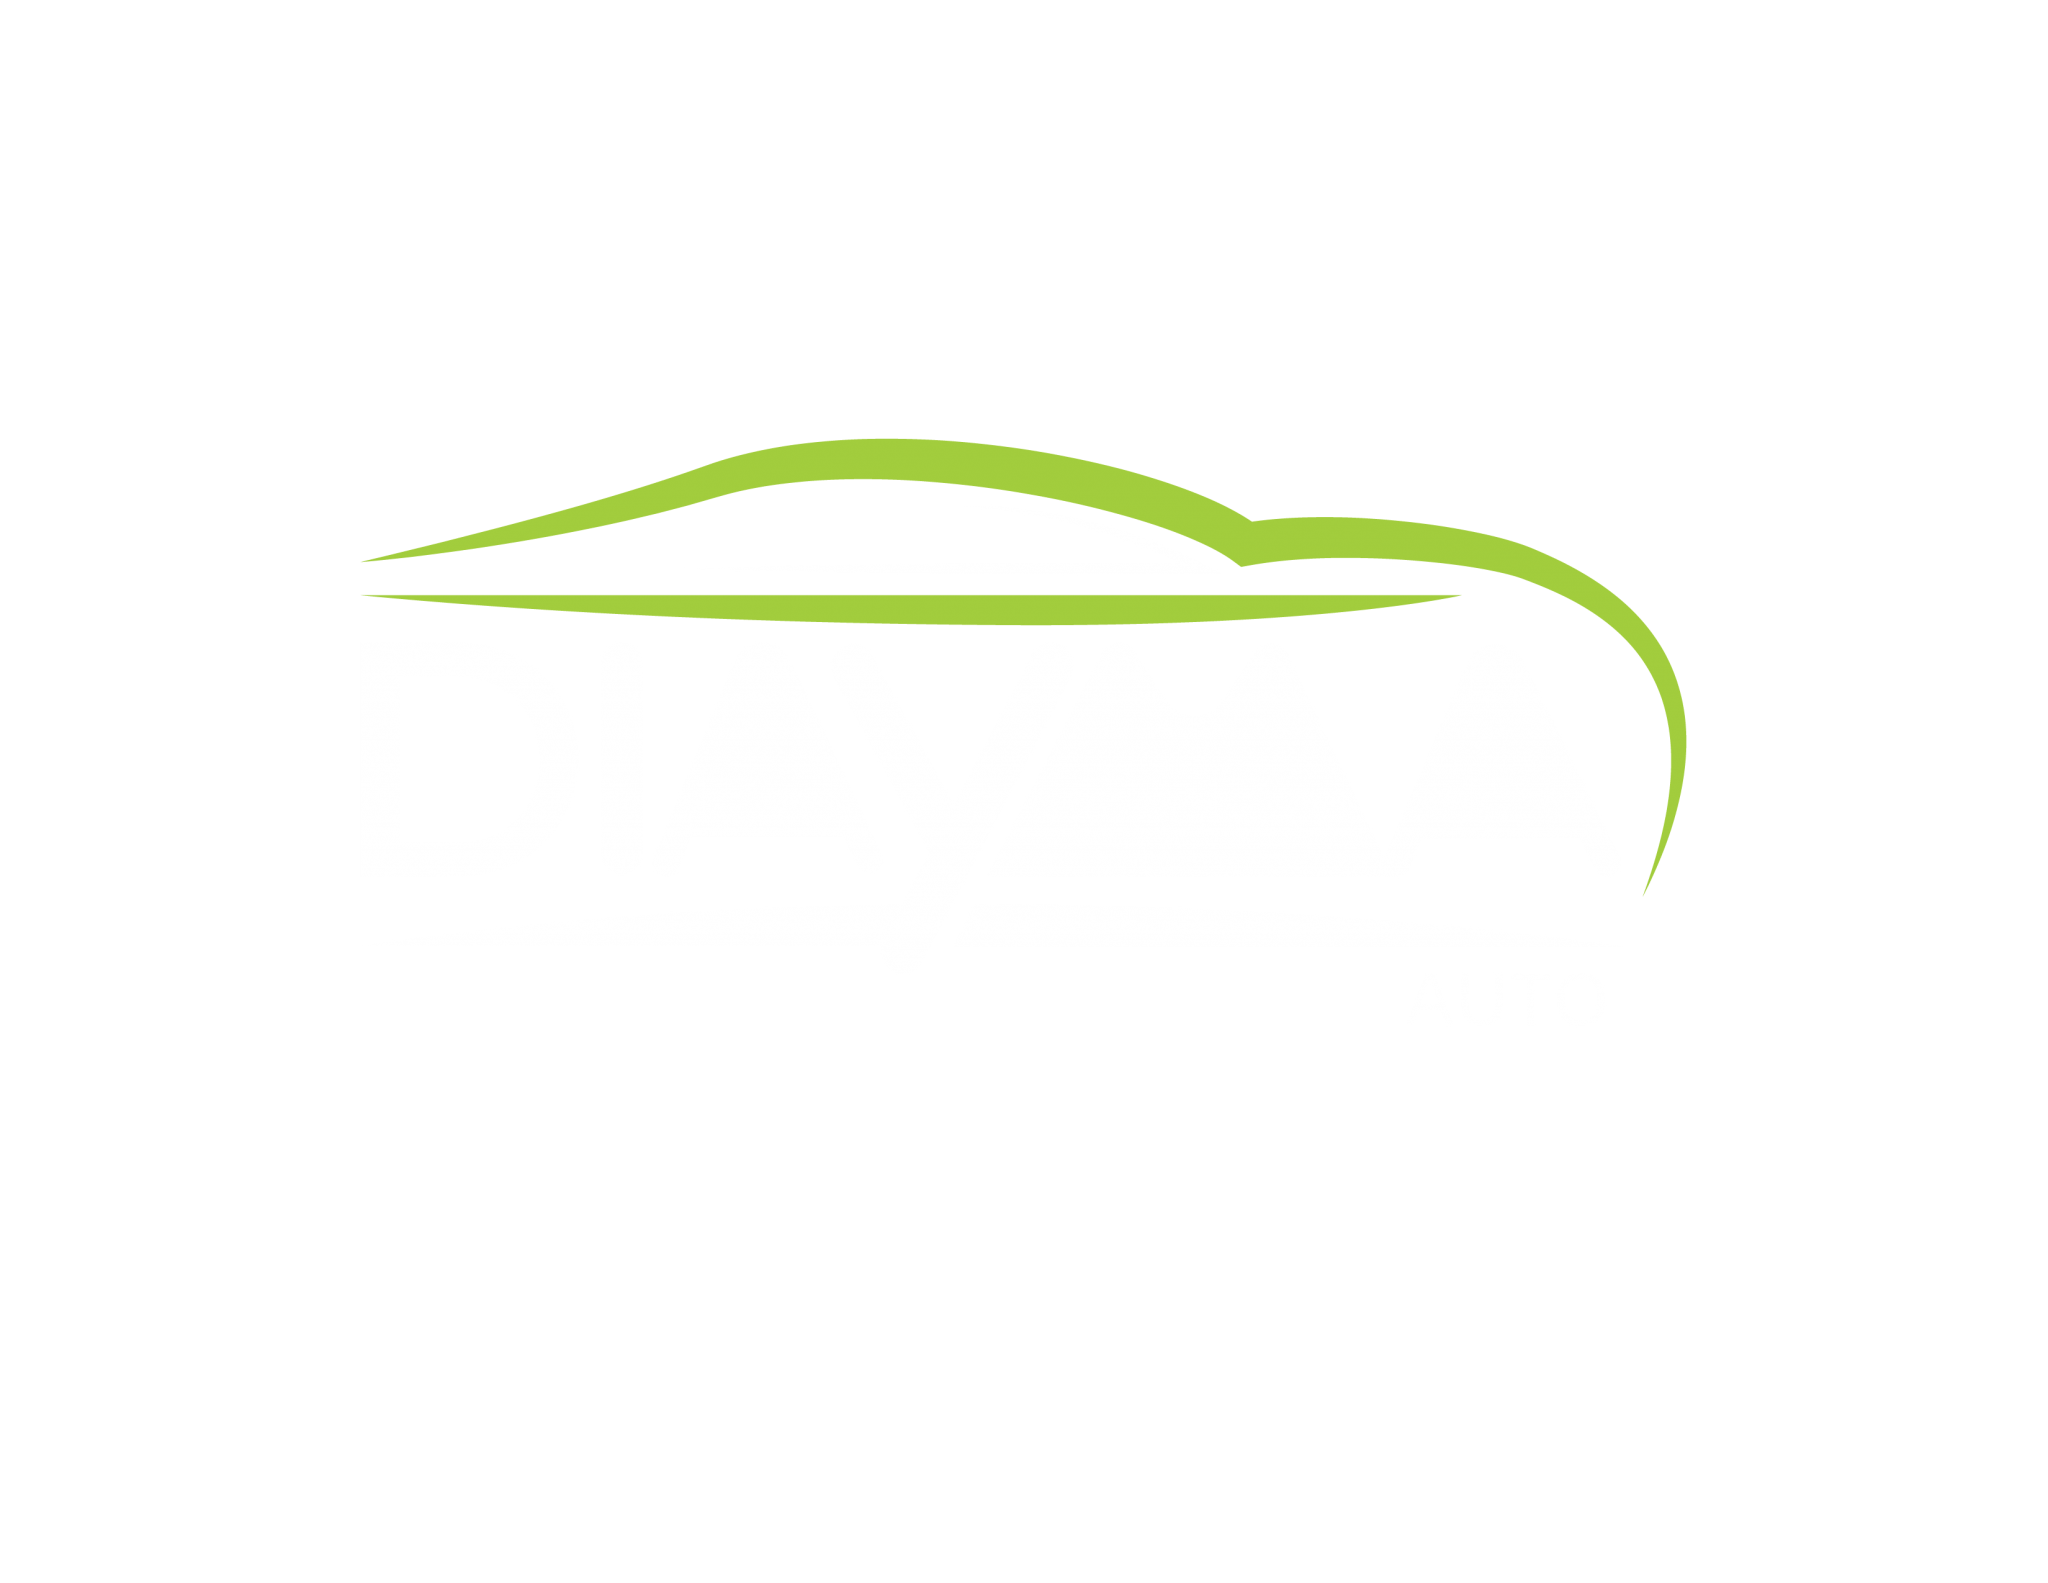 Diayma Auto